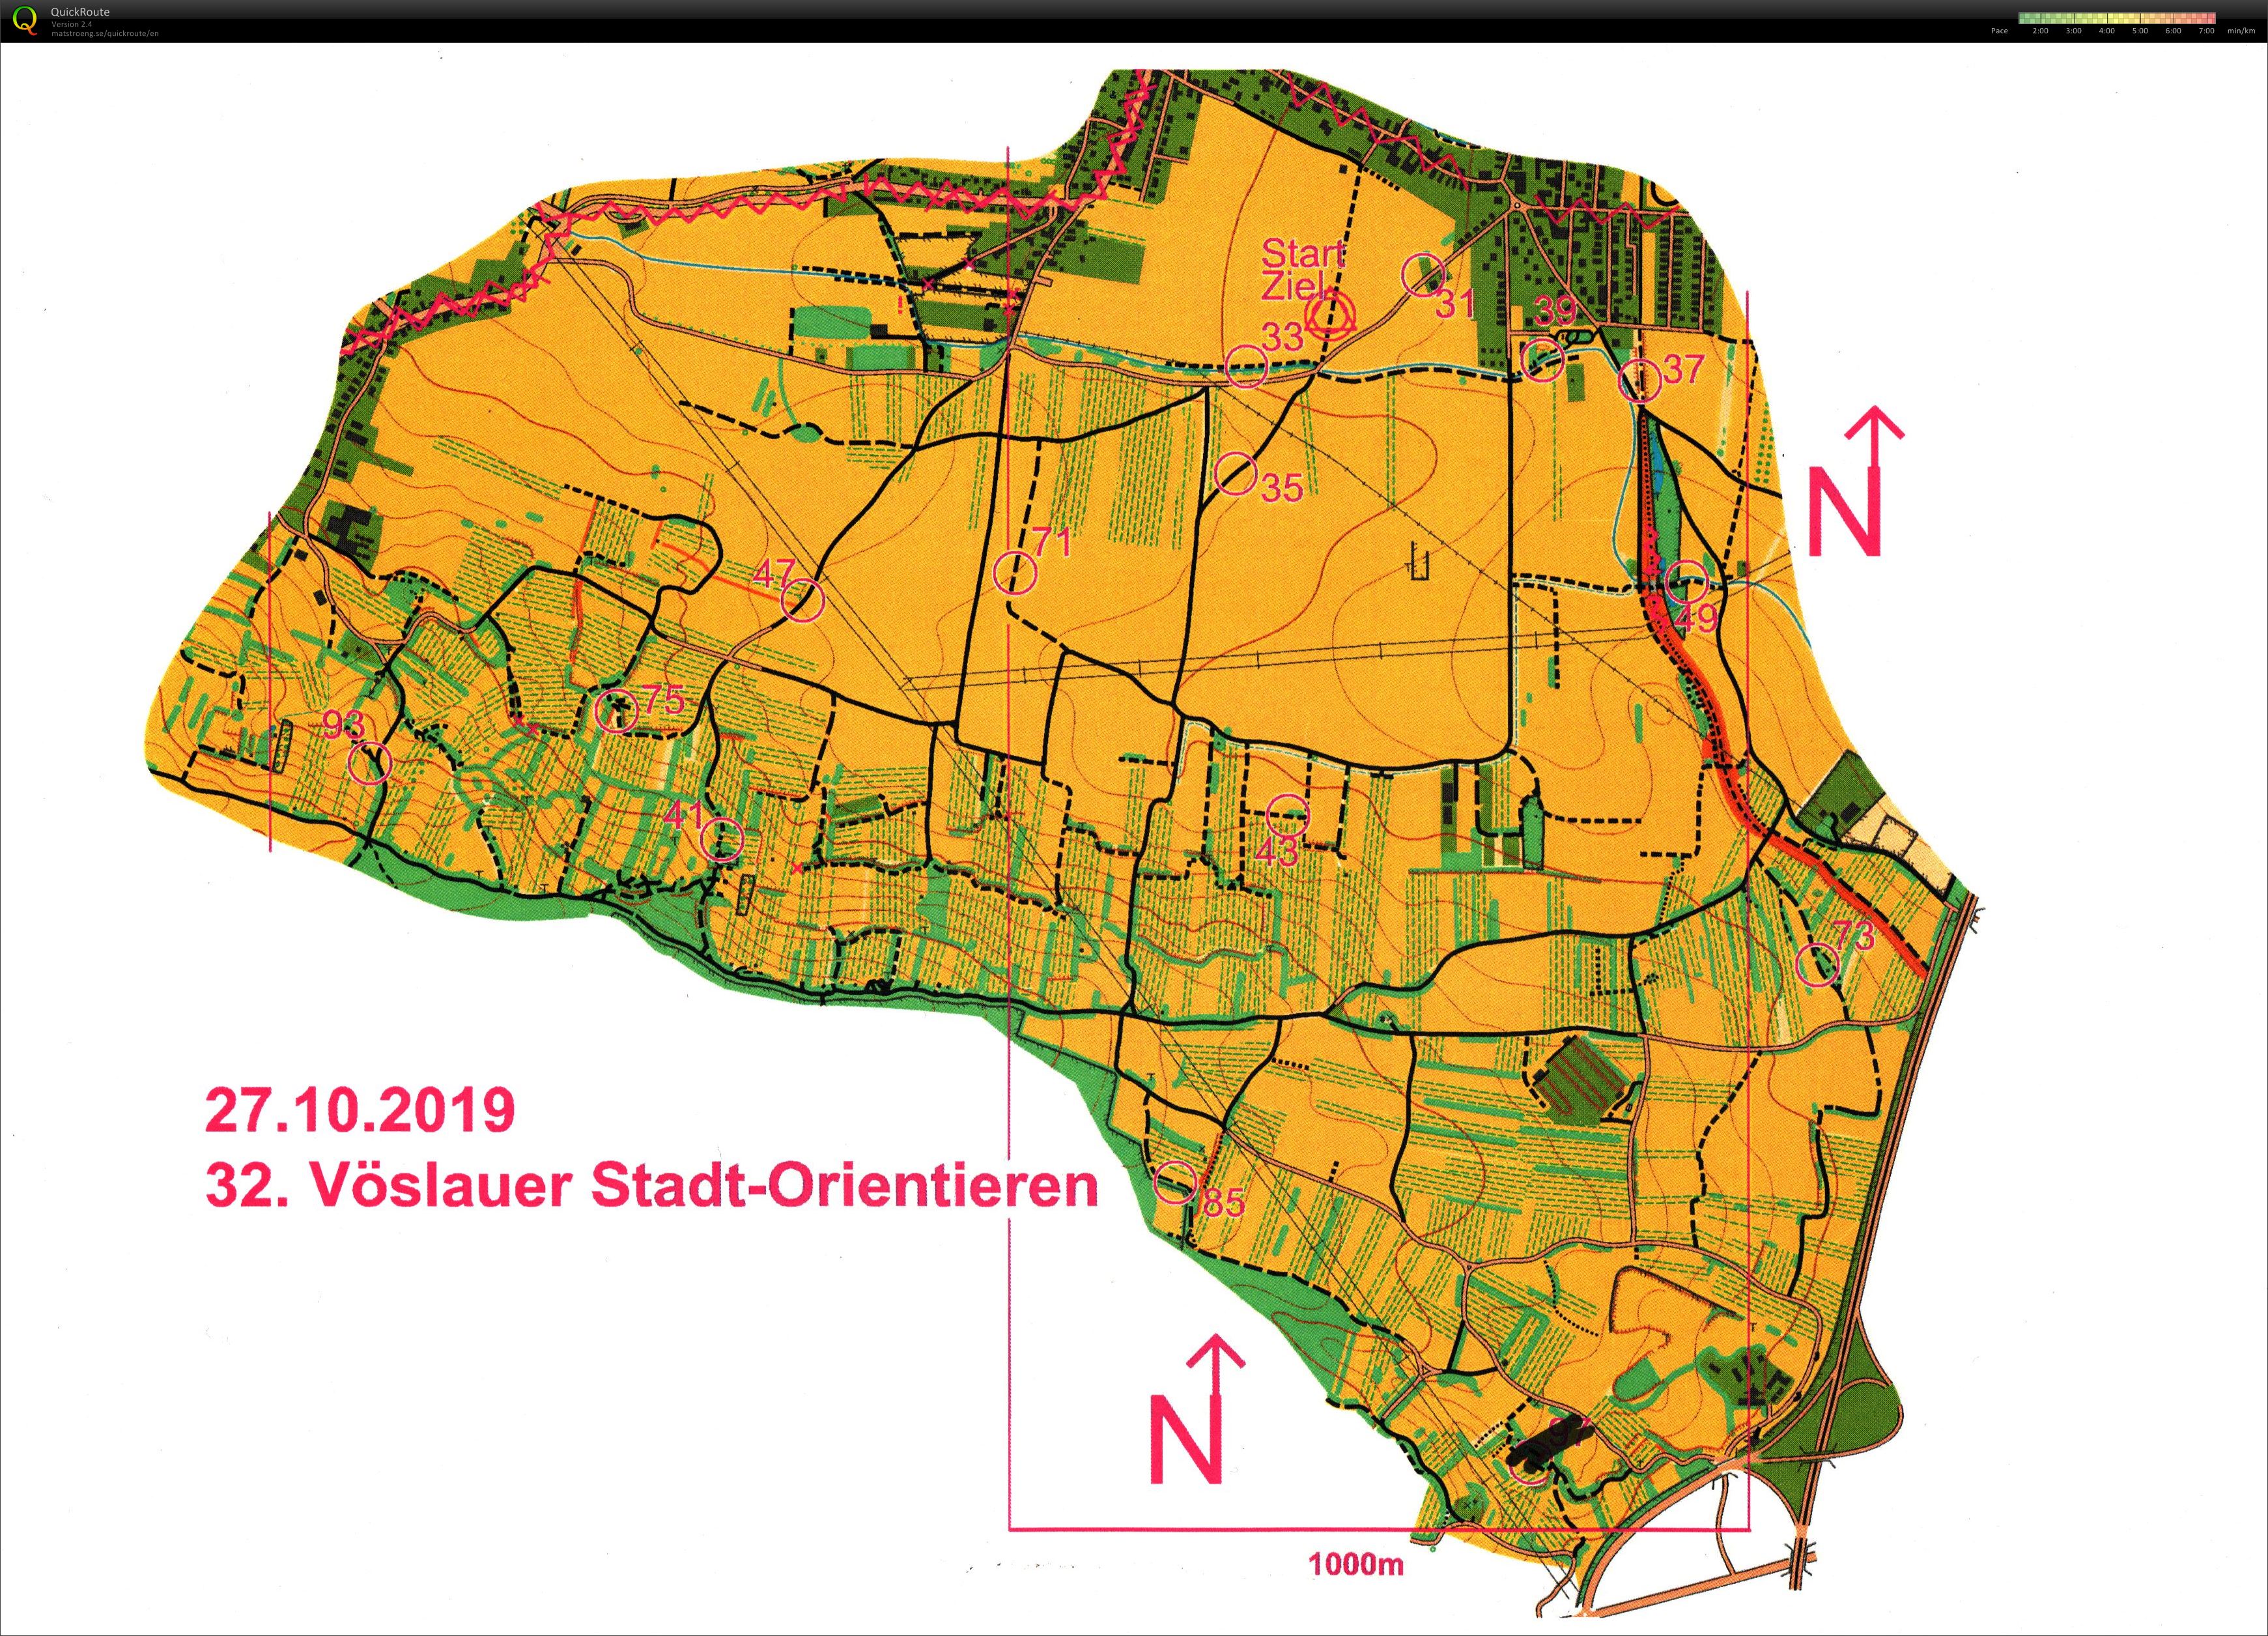 Vöslauer Stadt-Orientieren (27.10.2019)